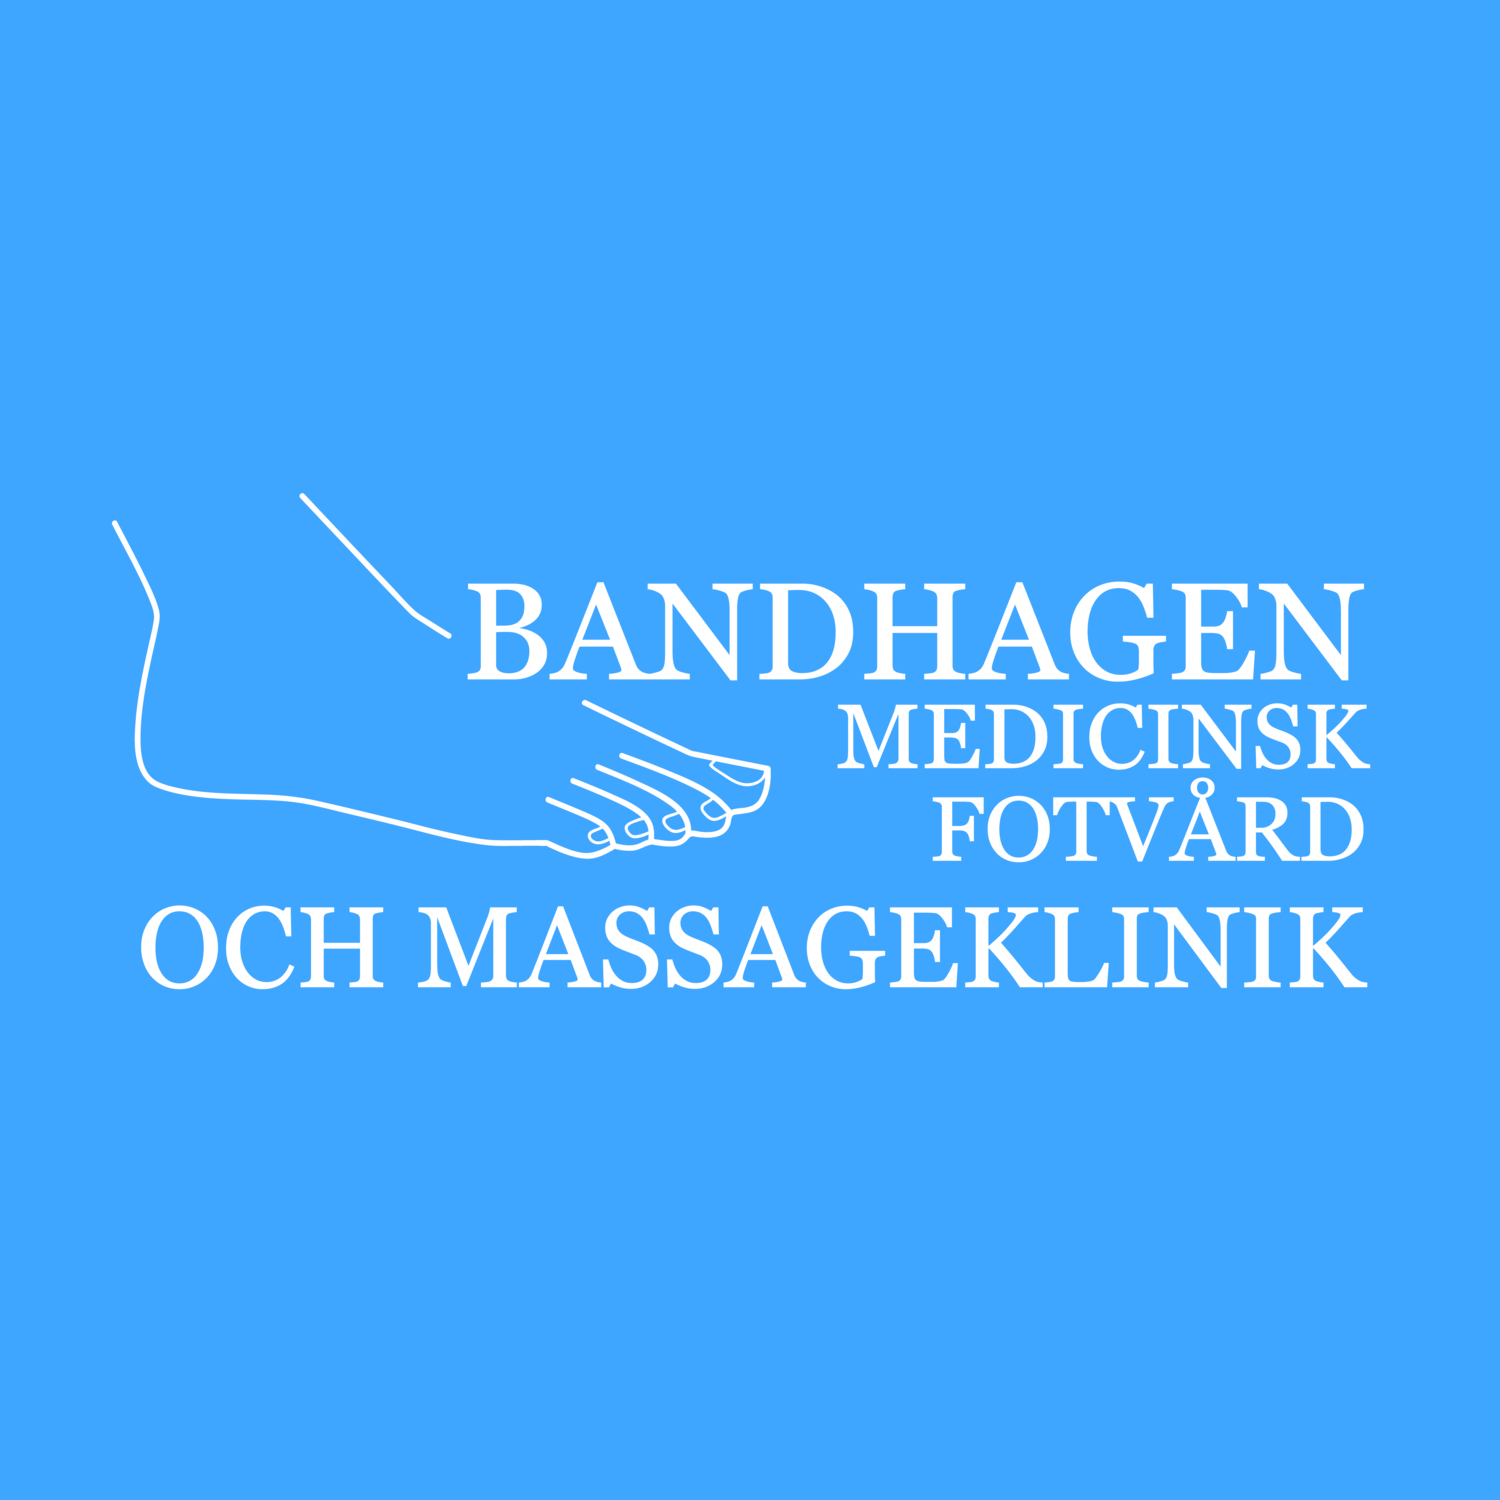 Bandhagen Medicinsk Fotvård och Massageklinik